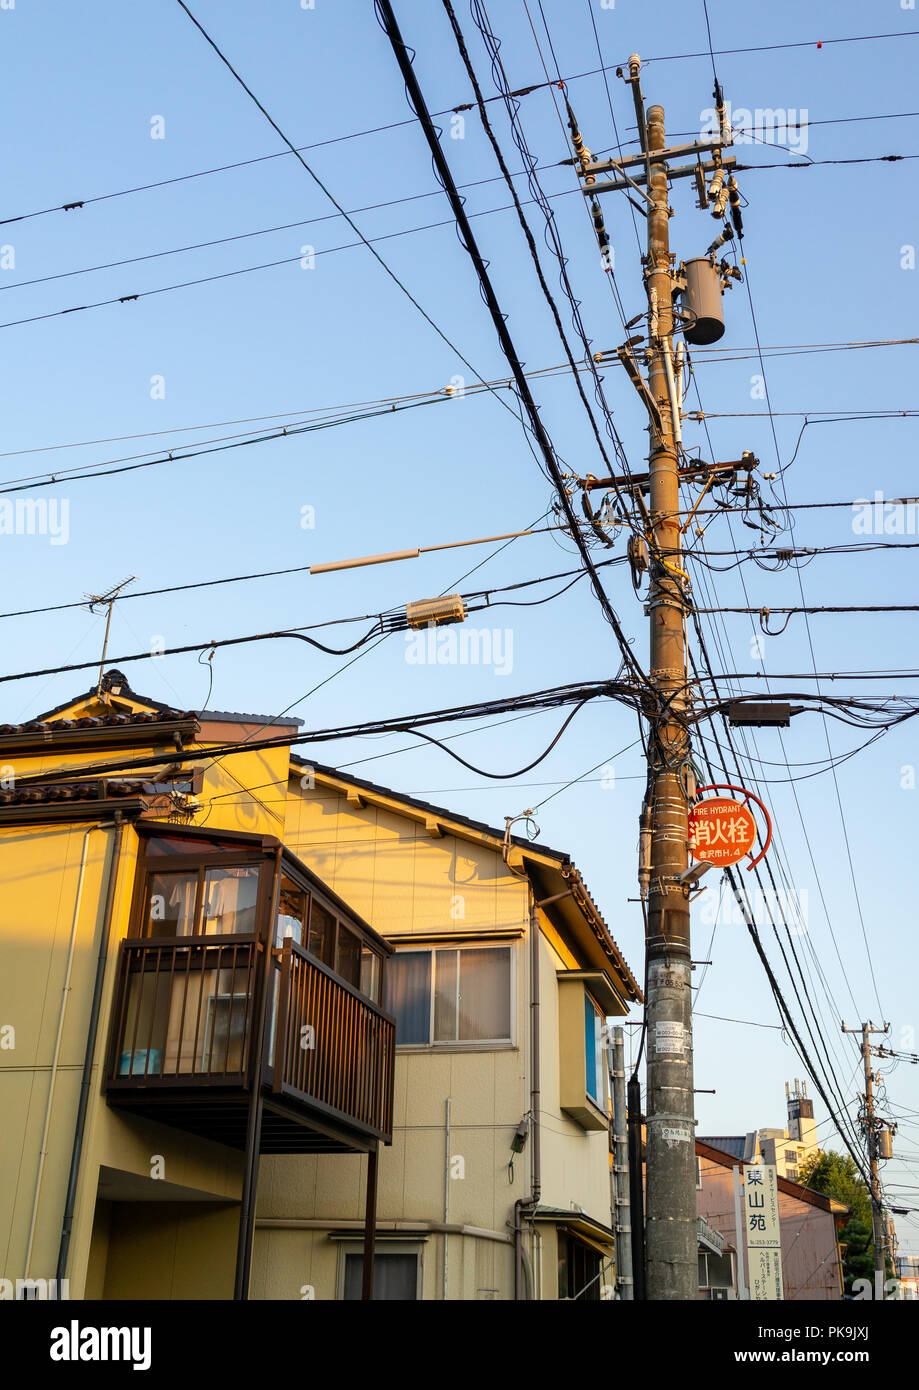 Tangled wires on electric pole in Kazue-machi chaya geisha district, Ishikawa Prefecture, Kanazawa, Japan Stock Photo